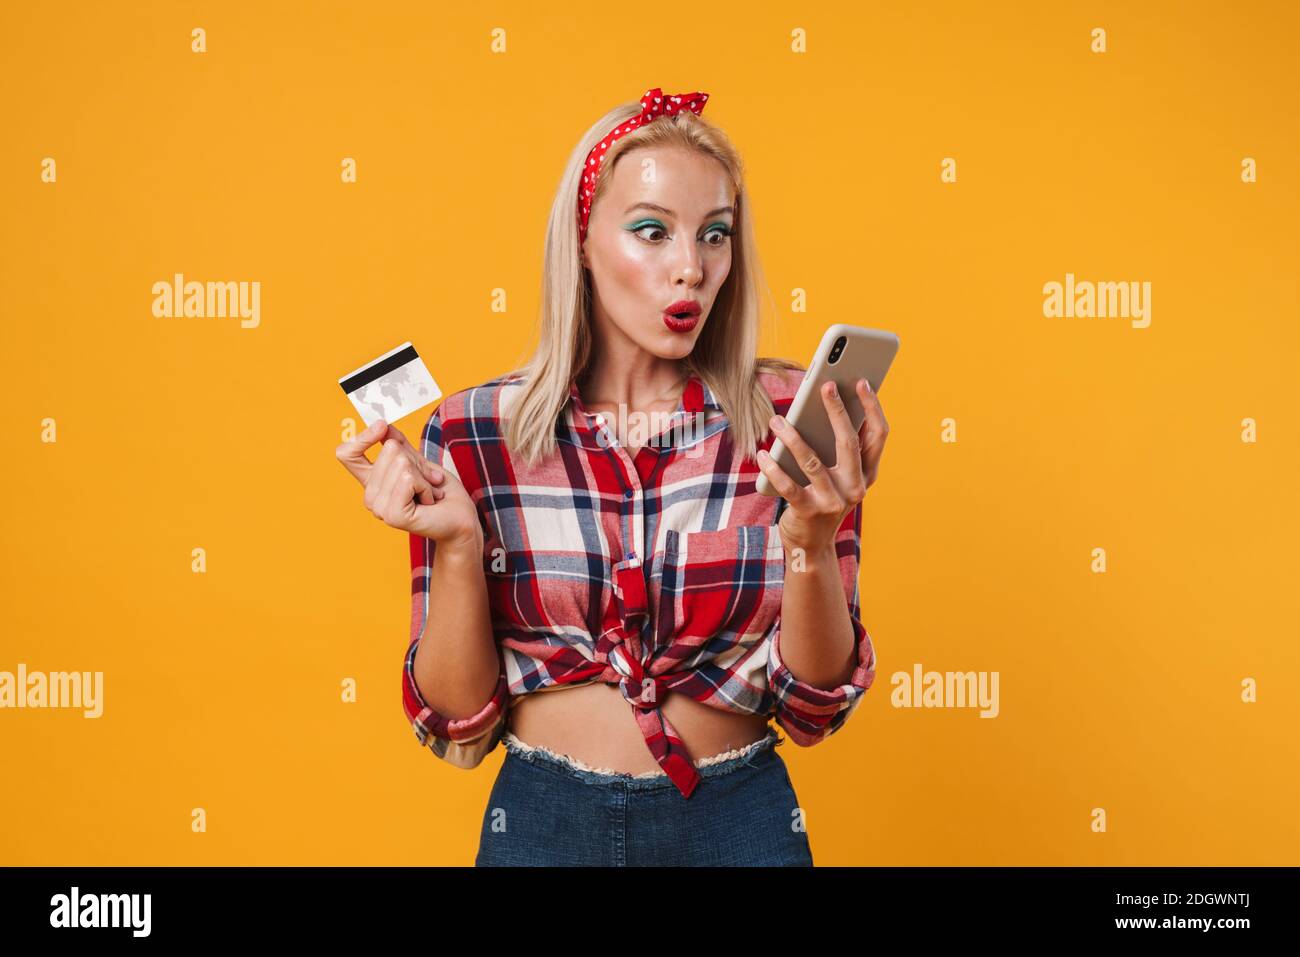 Image de la fille pinup blonde choquée posant avec la carte de crédit et téléphone portable isolé sur fond jaune Banque D'Images